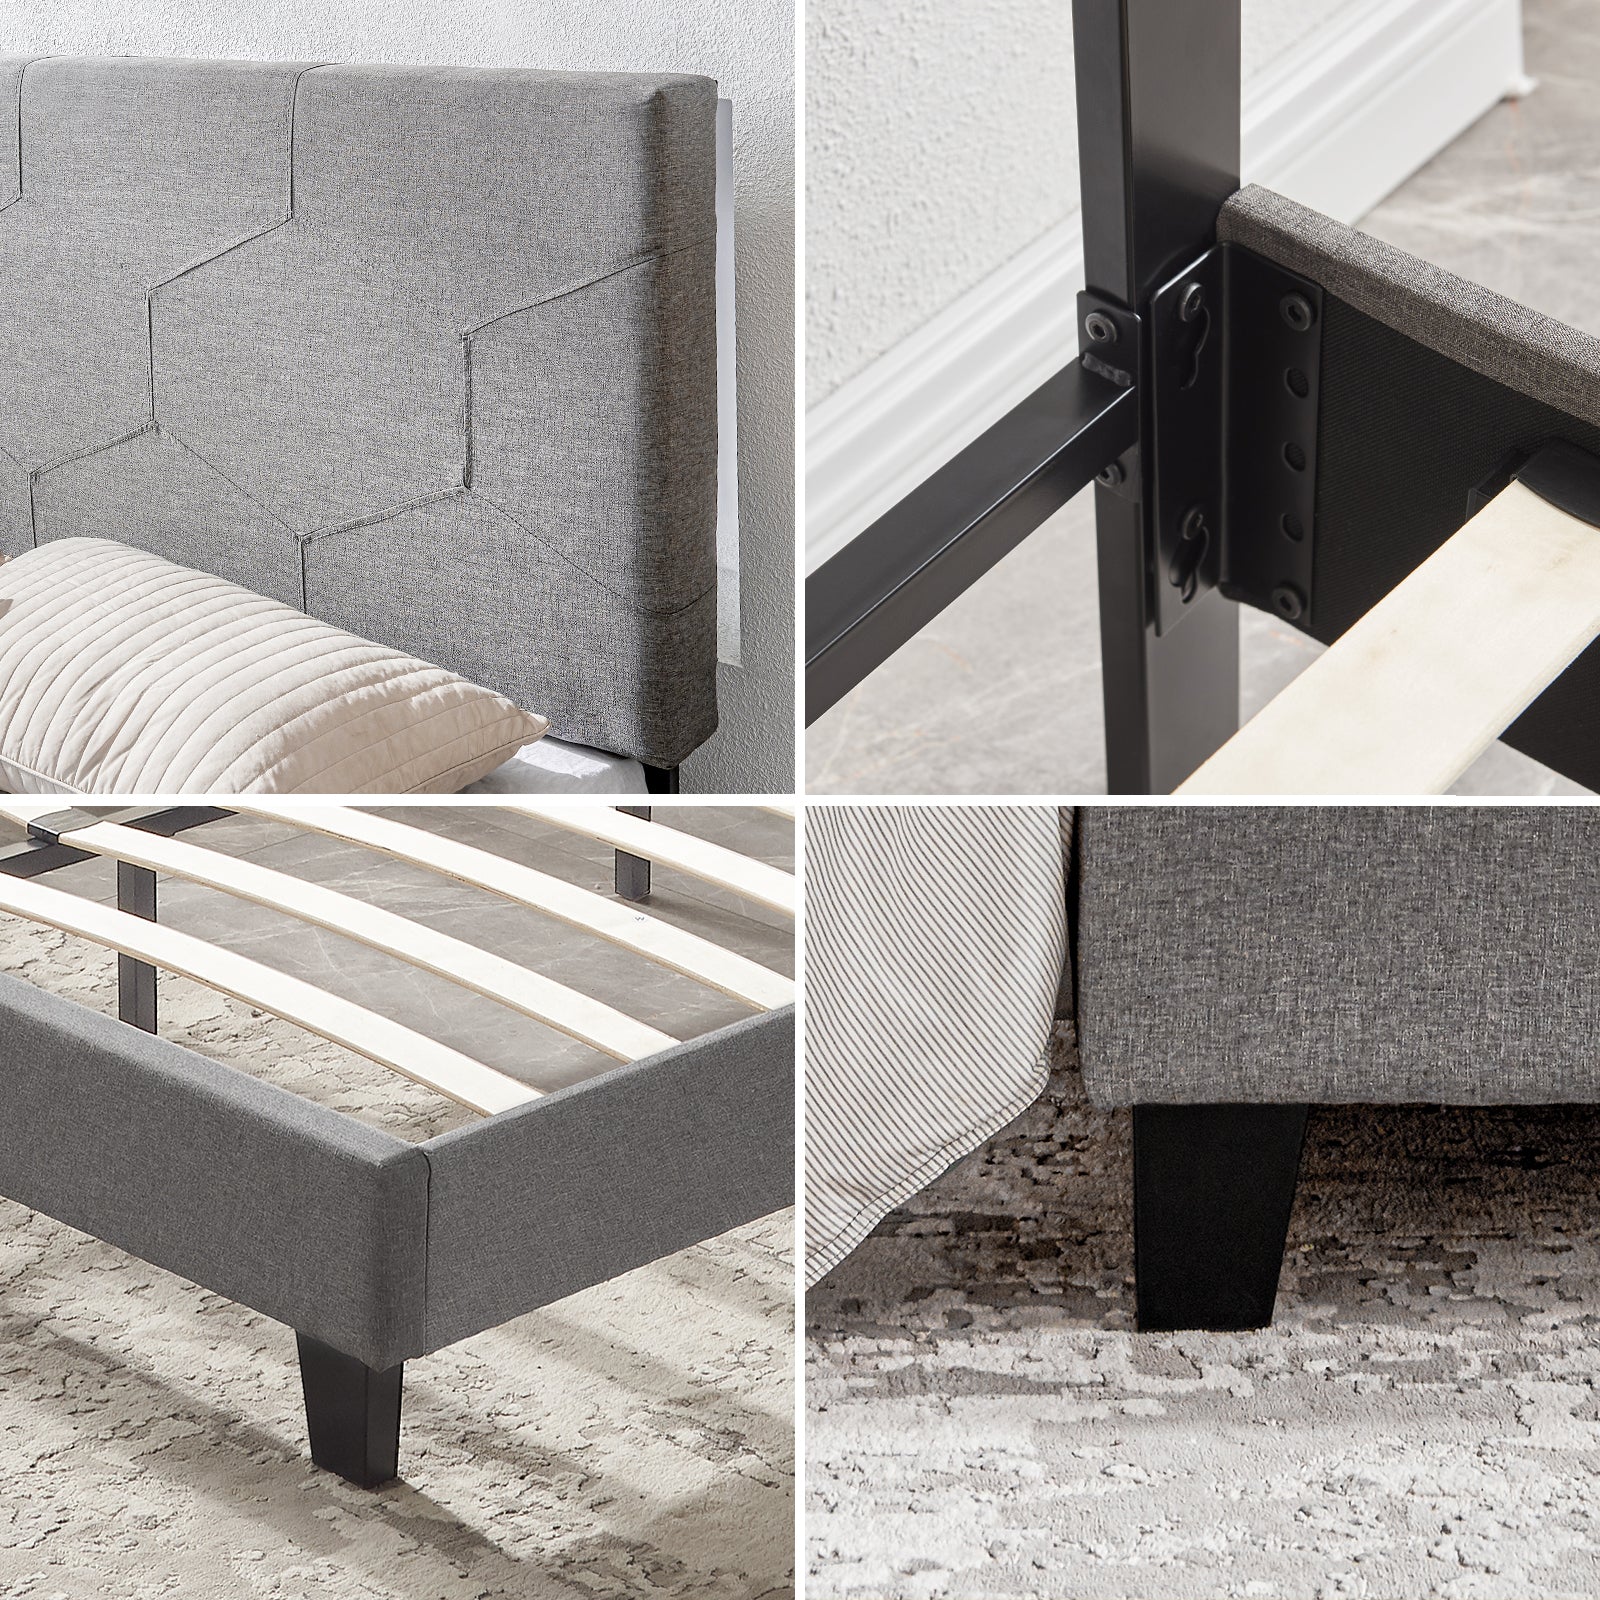 Queen Size Upholstered Platform Bed Frame ,Wood Slat Support, Easy Assembly,Grey